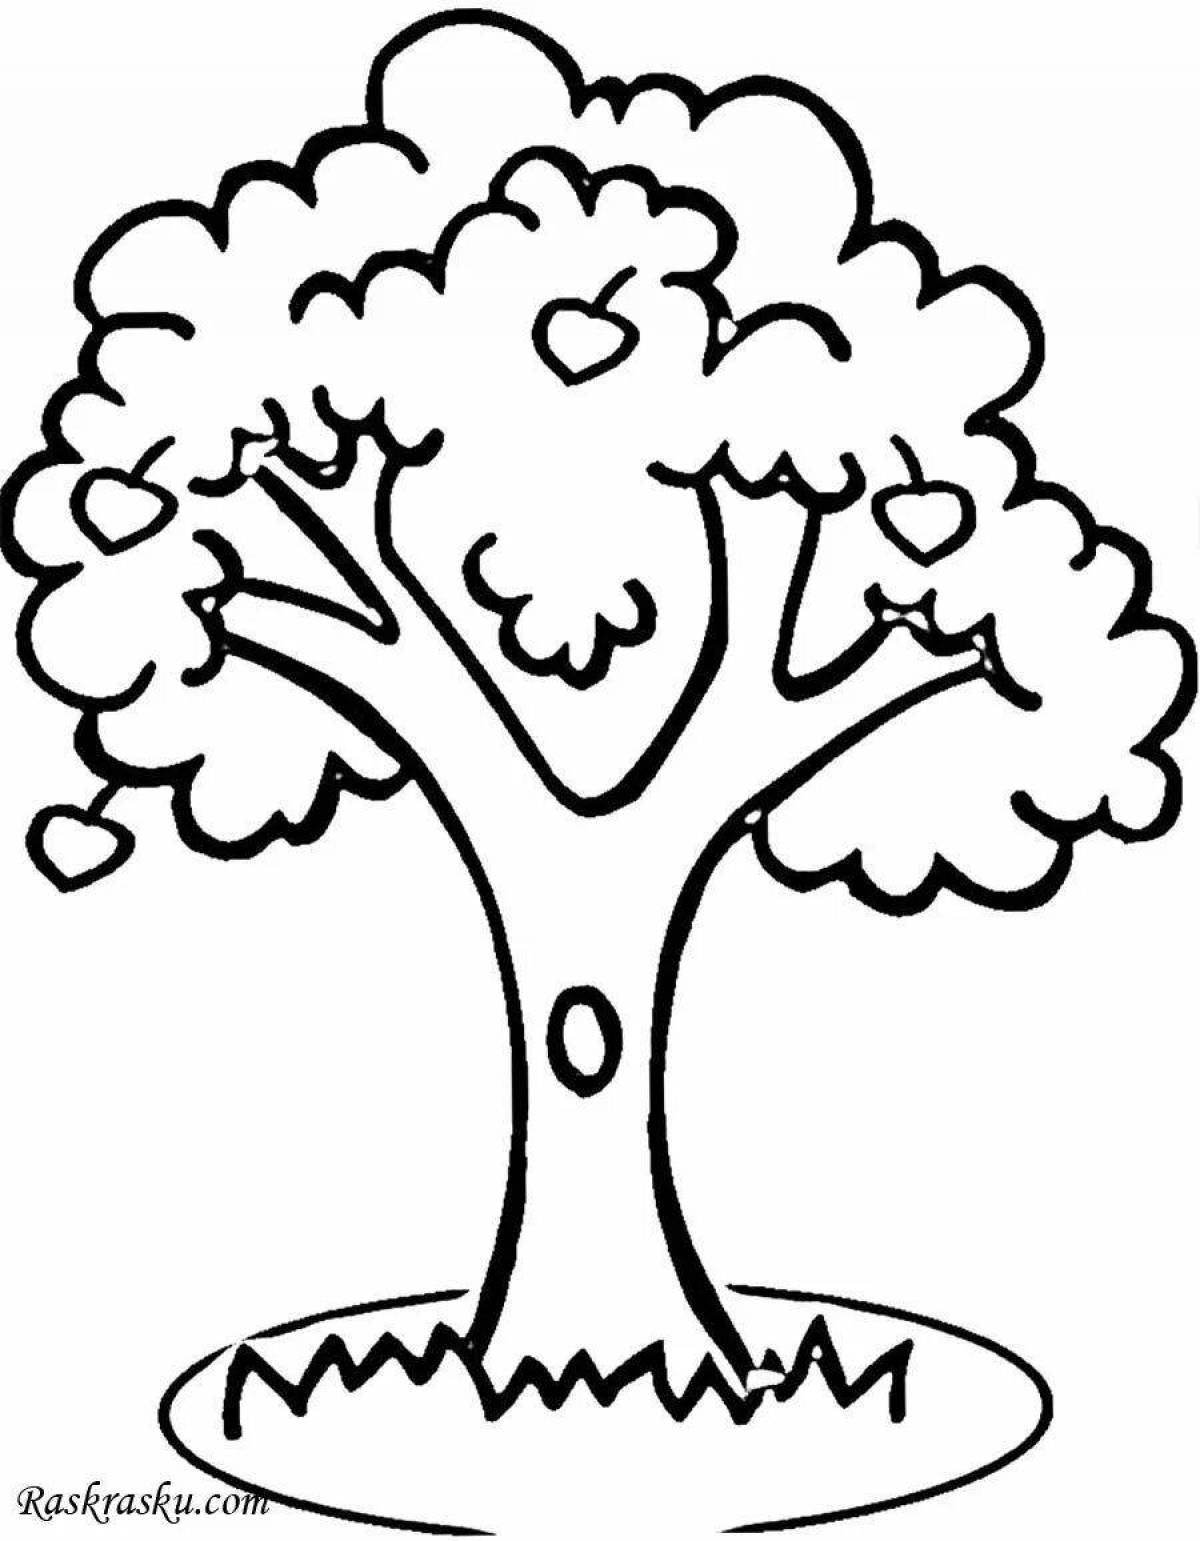 Игривый рисунок дерева для детей